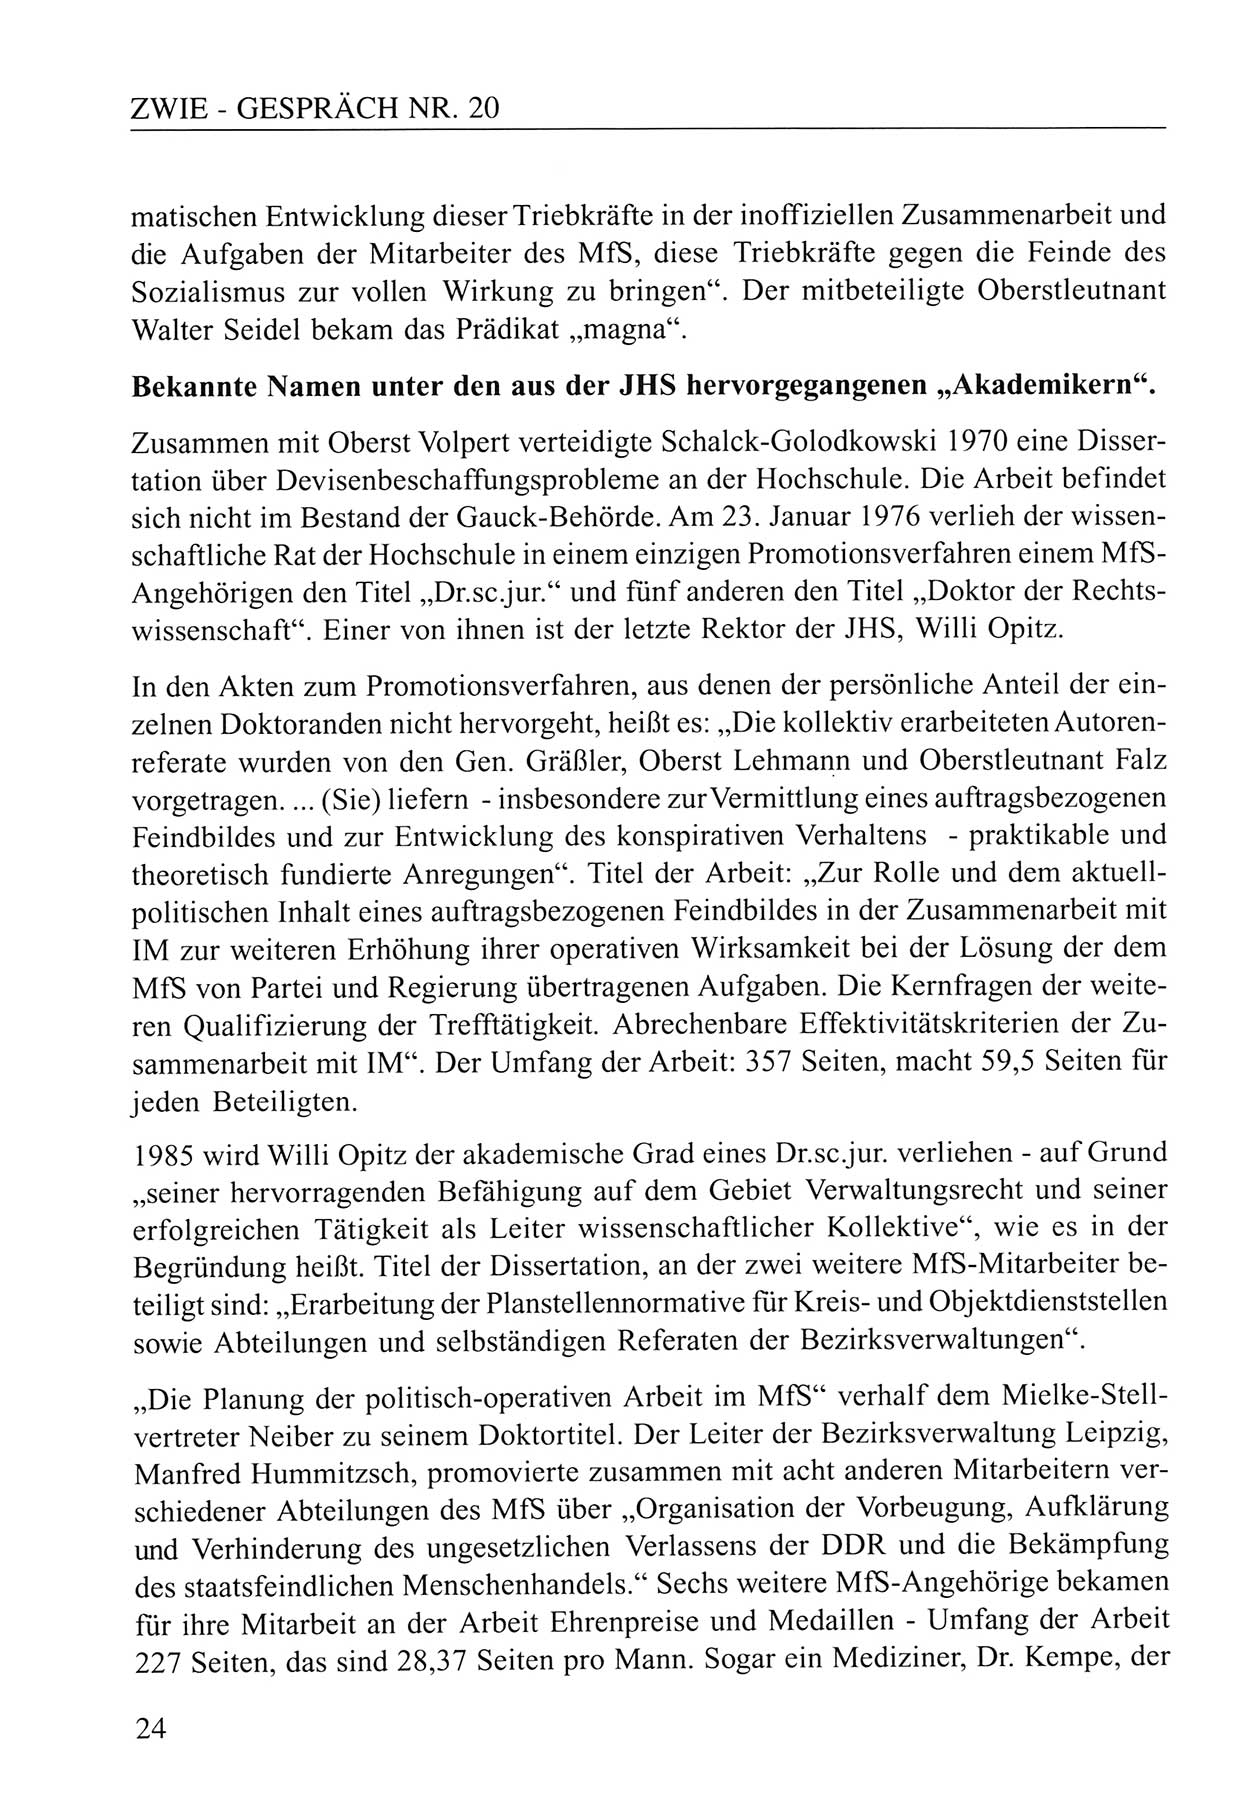 Zwie-Gespräch, Beiträge zum Umgang mit der Staatssicherheits-Vergangenheit [Deutsche Demokratische Republik (DDR)], Ausgabe Nr. 20, Berlin 1994, Seite 24 (Zwie-Gespr. Ausg. 20 1994, S. 24)